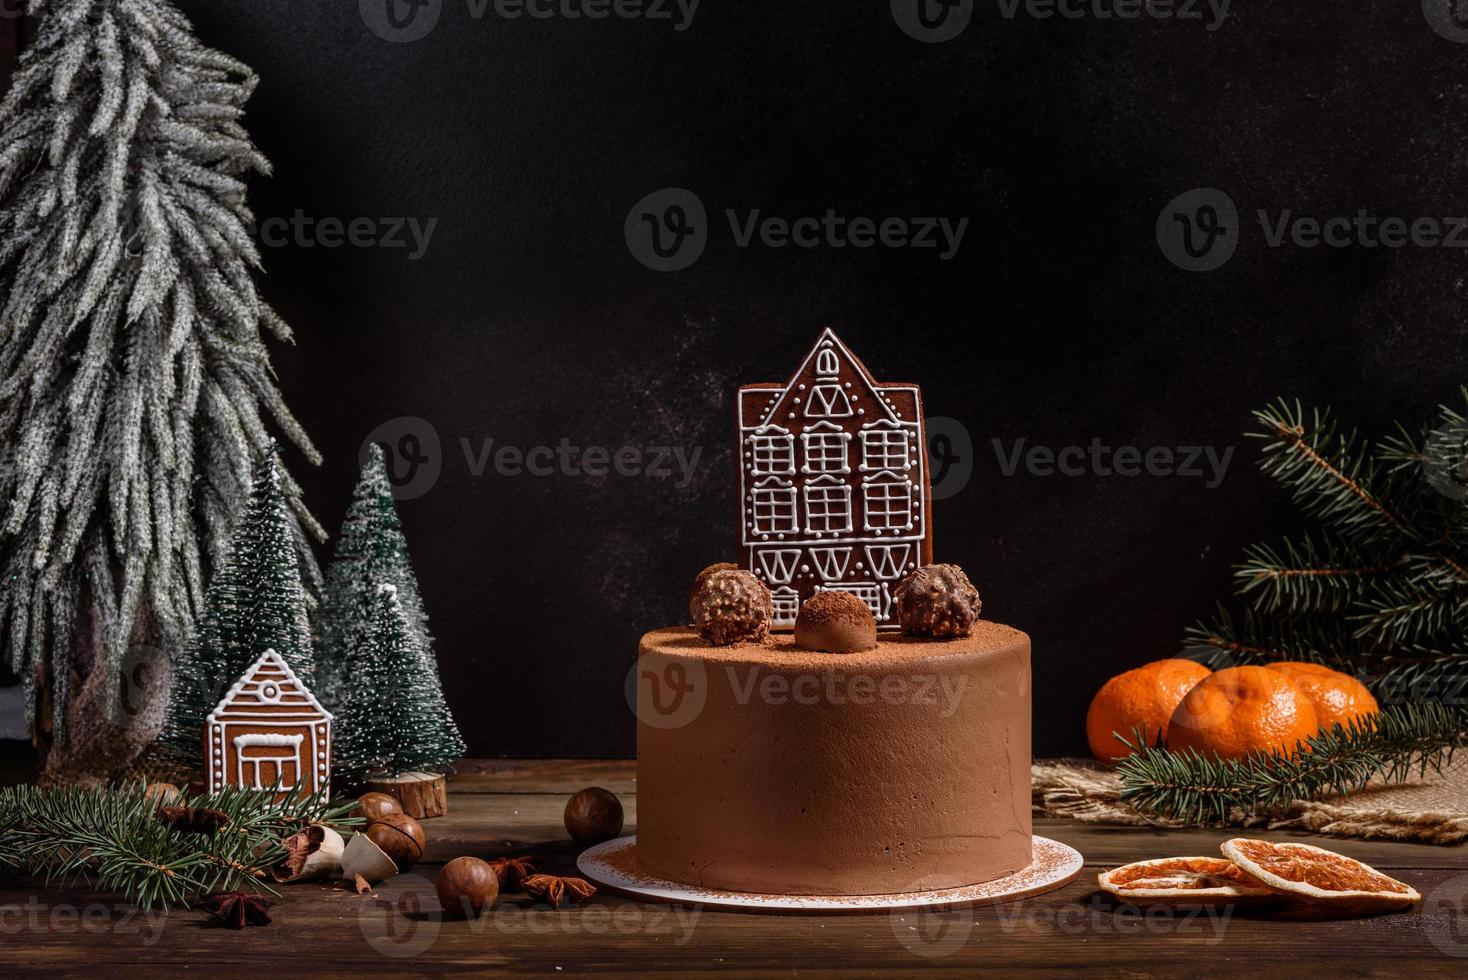 Deliziosi dolci belli su un tavolo di legno scuro alla vigilia di Natale foto